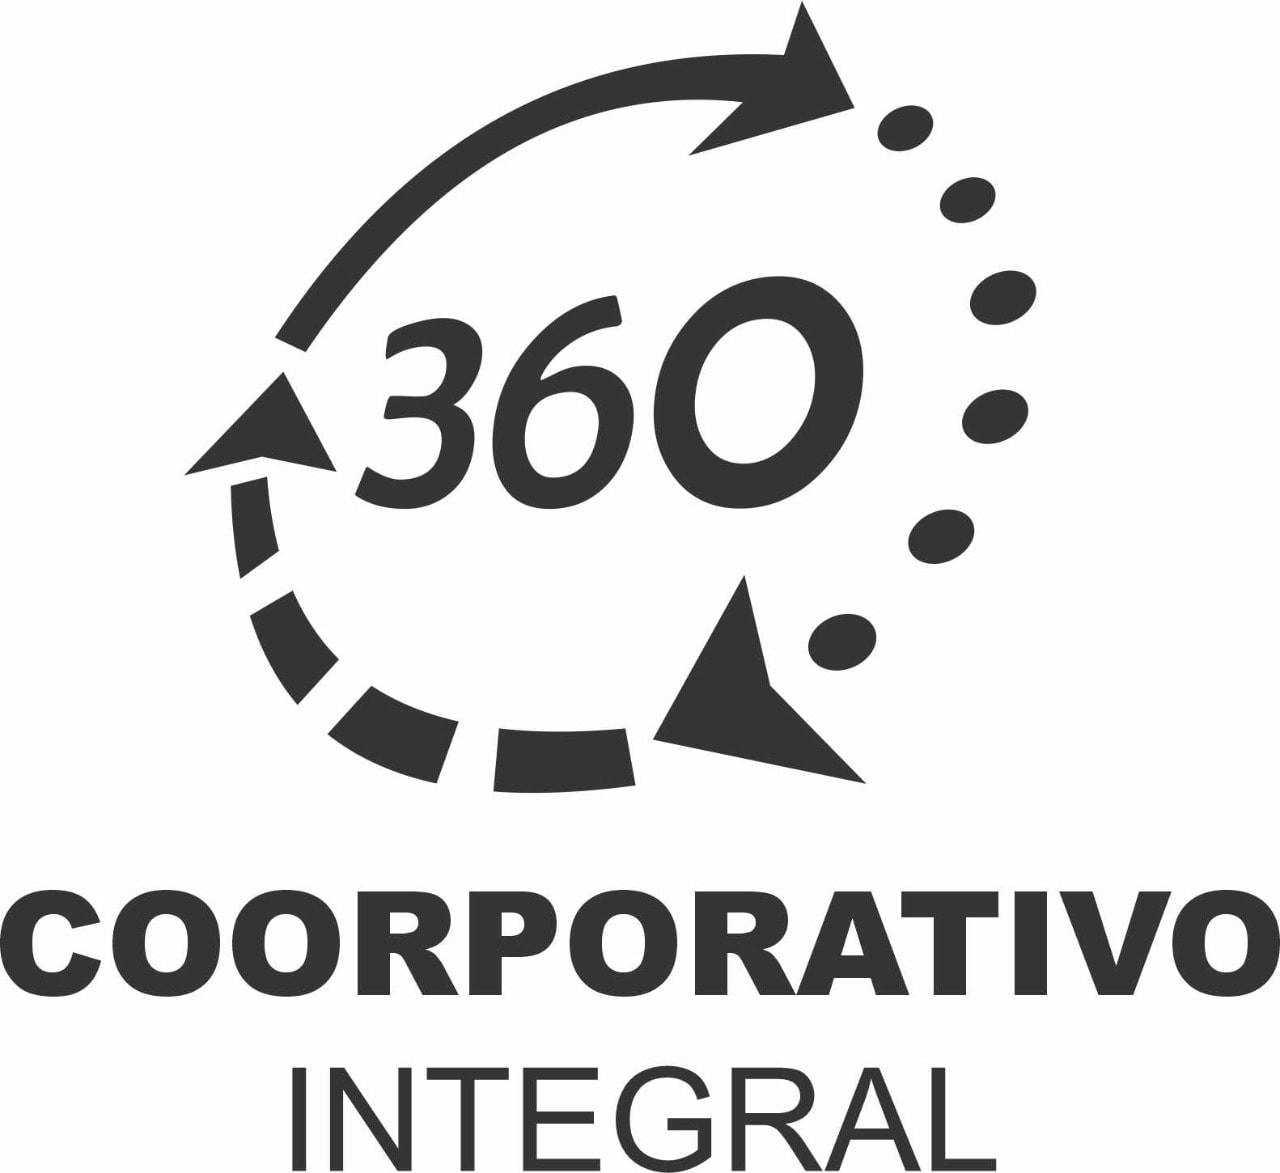 Corporativo Integral 360°